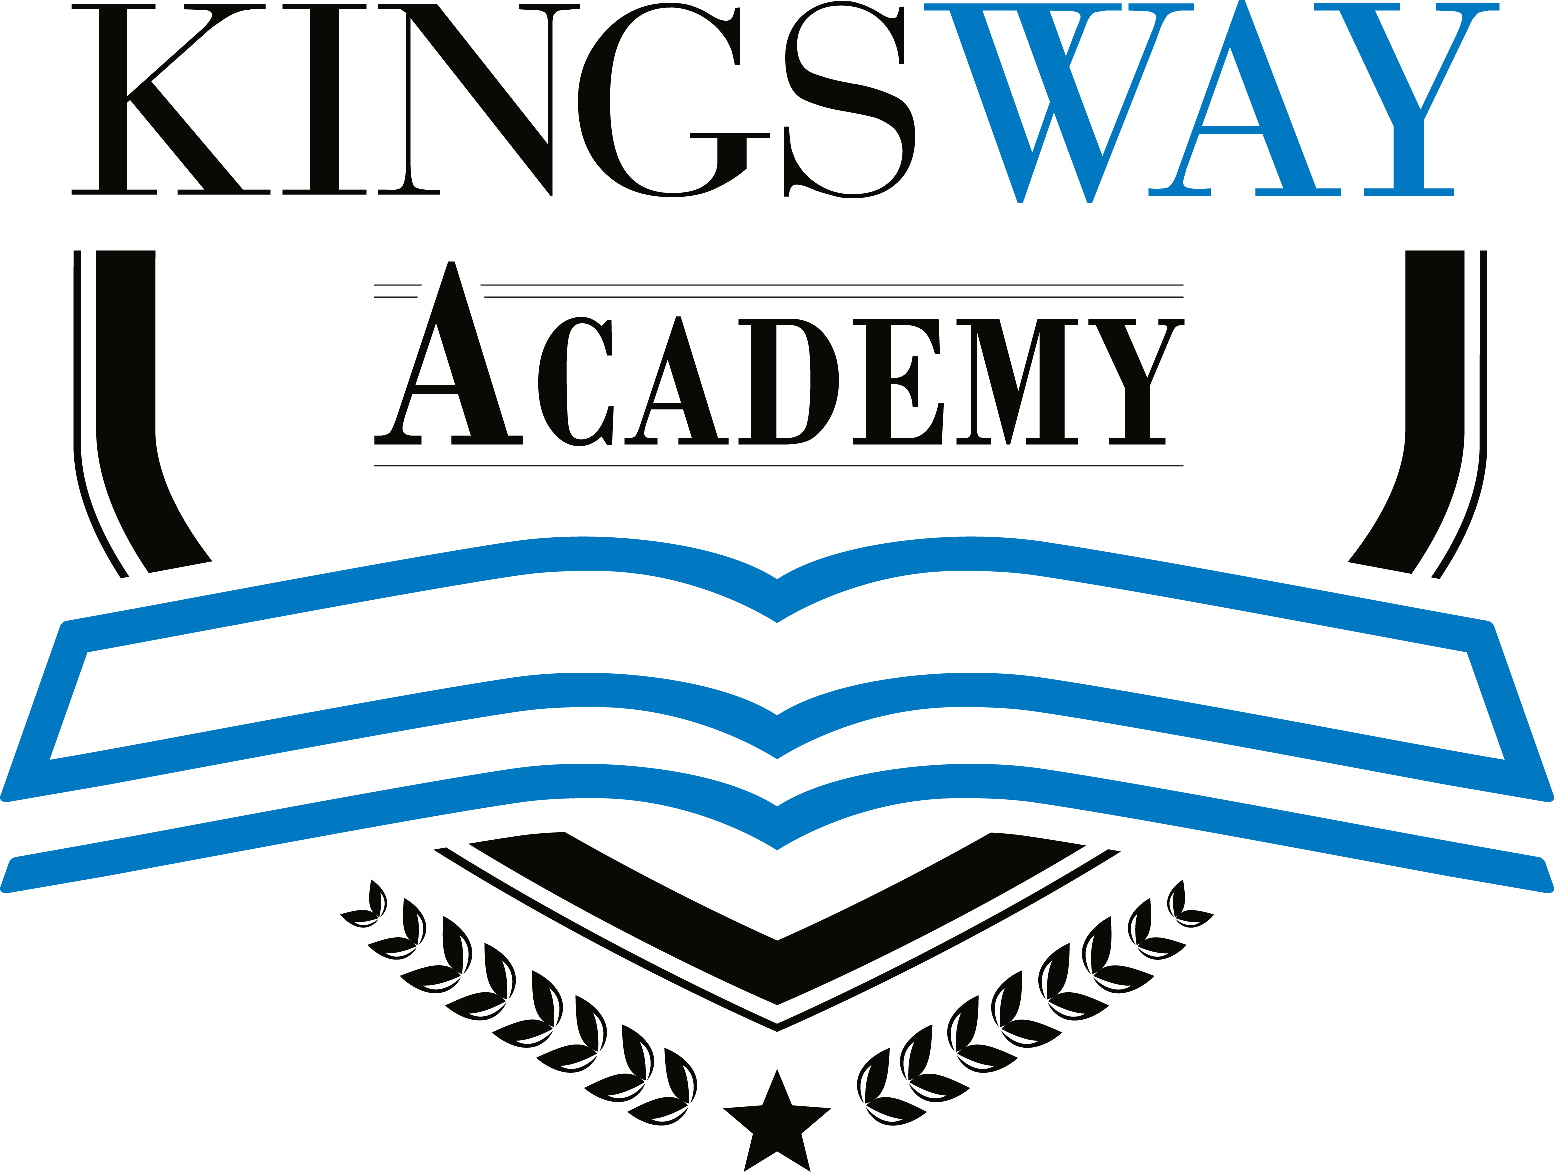 Trường THPT Kingsway Academy - Nền tảng vững vàng, Tương lai ngời sáng!